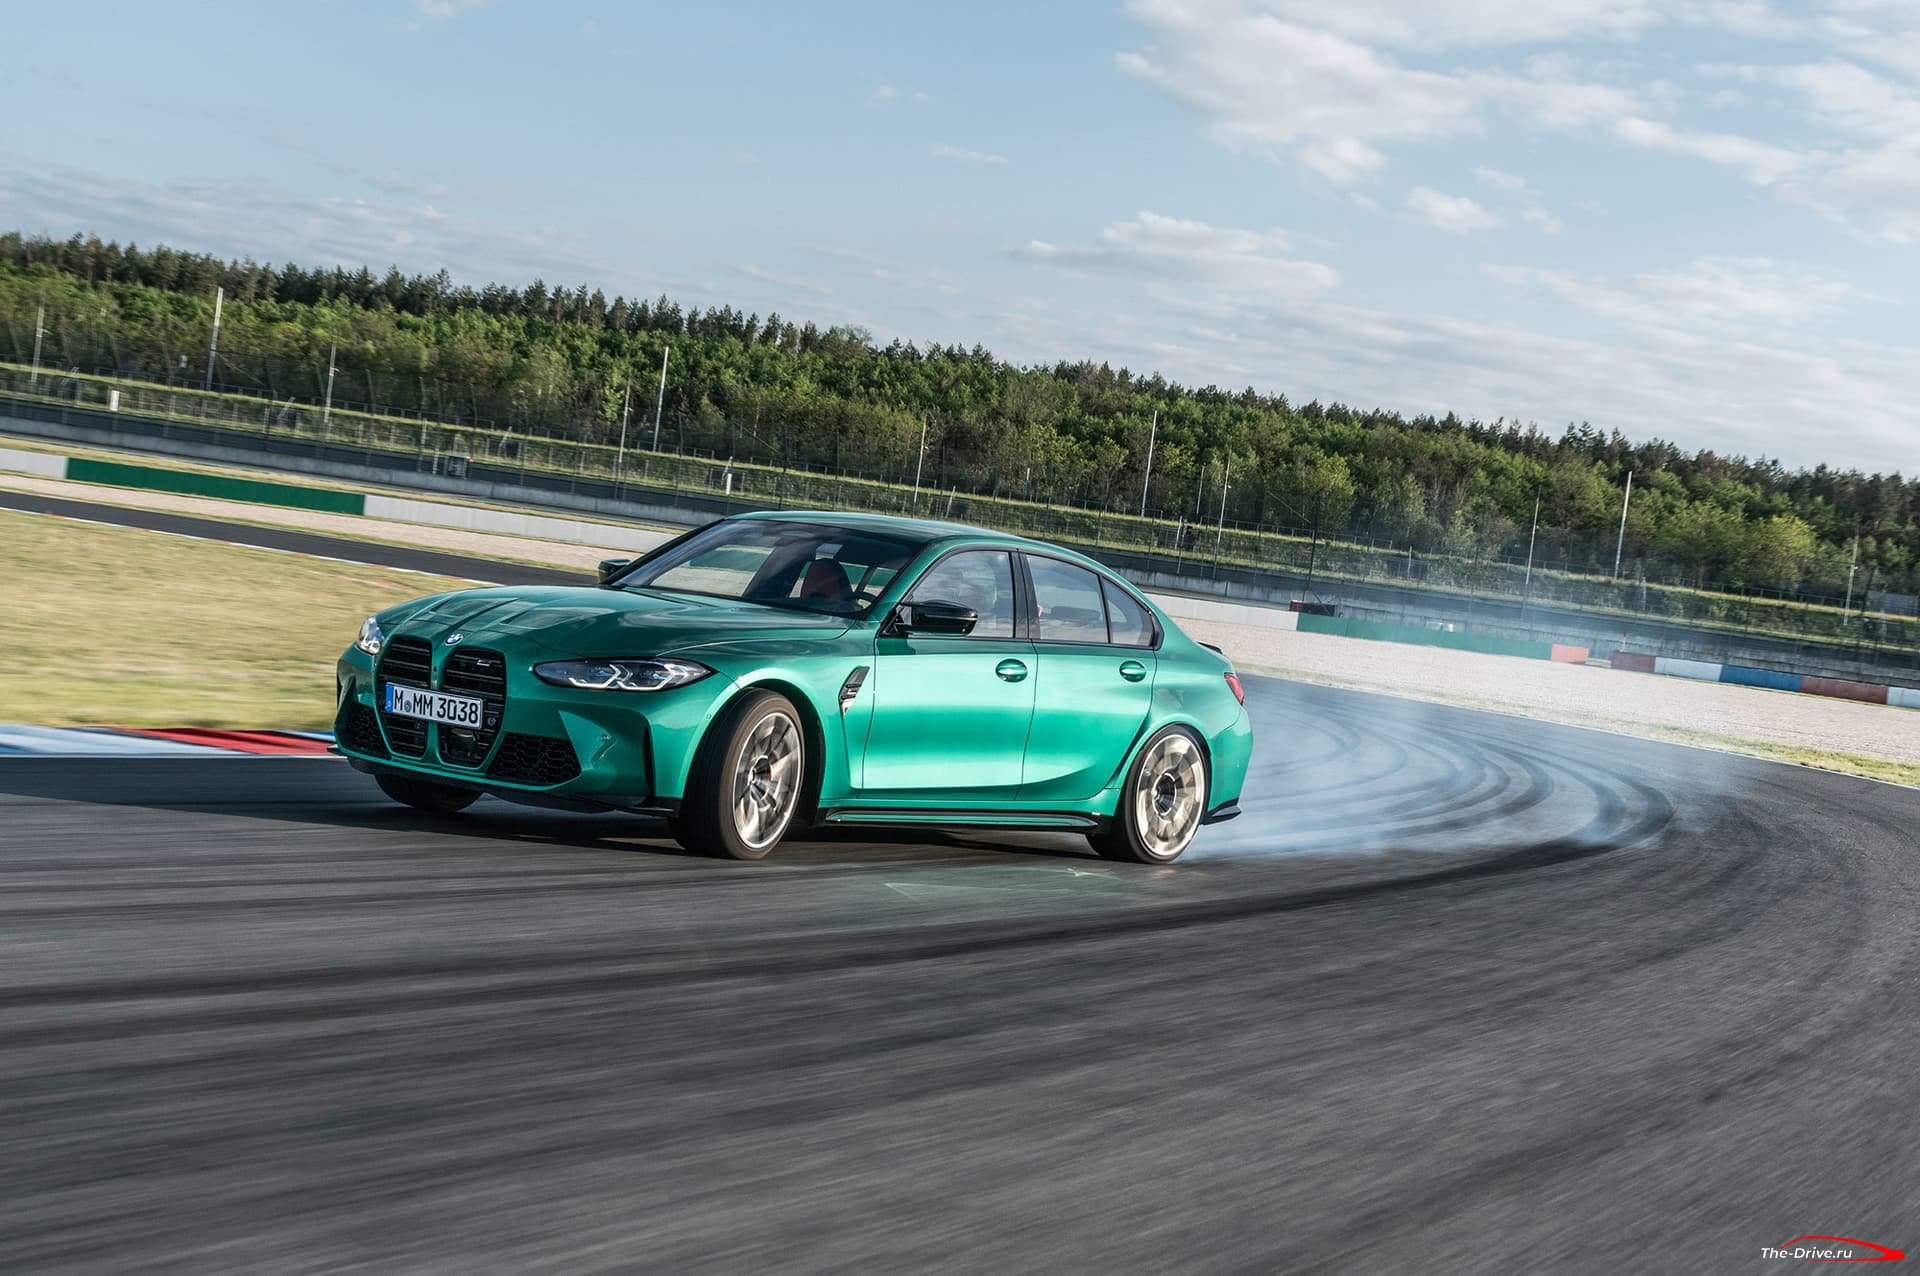 BMW М3 2020 года в кузове G80. Фото, цены и дата выхода новой модели в России